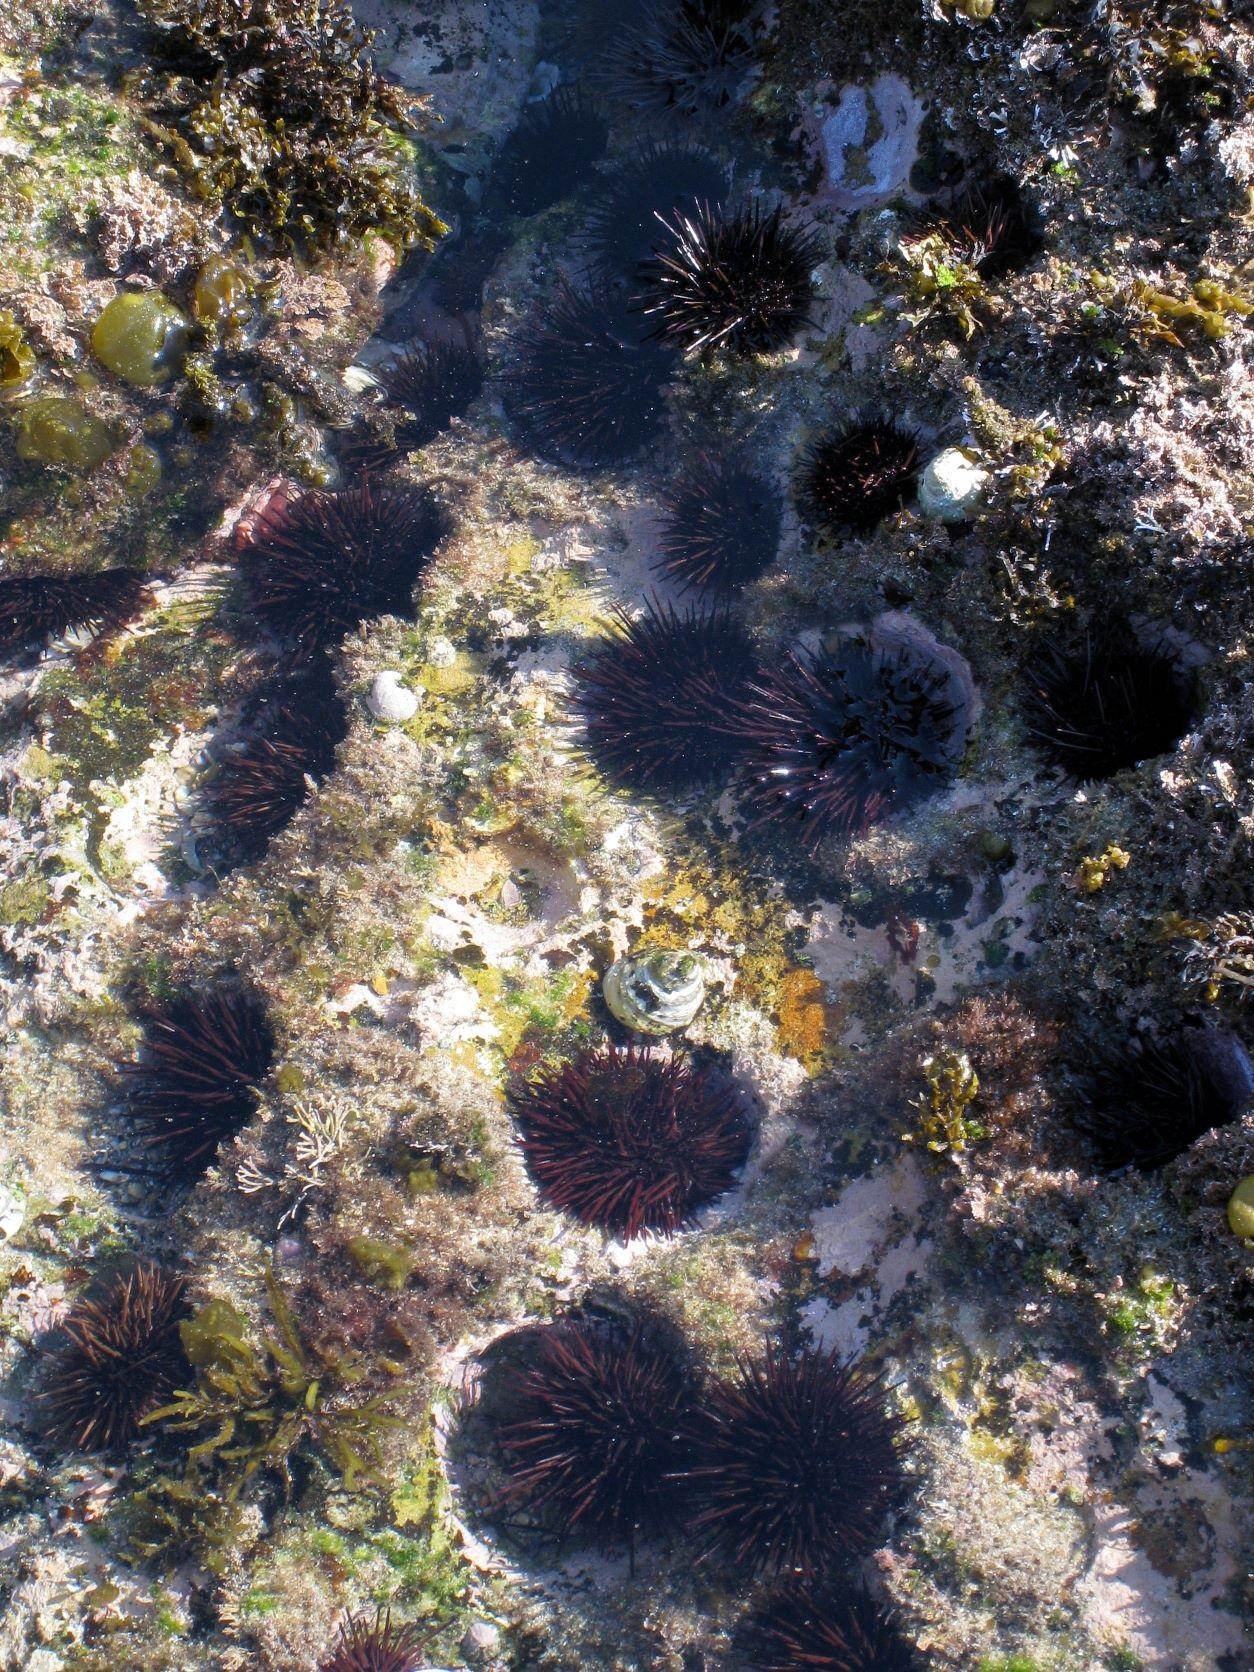 海胆对维持海洋生态系统的功能担当着重要角色，然而气候变化令海洋热浪的出现更为频繁，威胁海胆族群的生存。图中为澳洲悉尼的海胆族群。